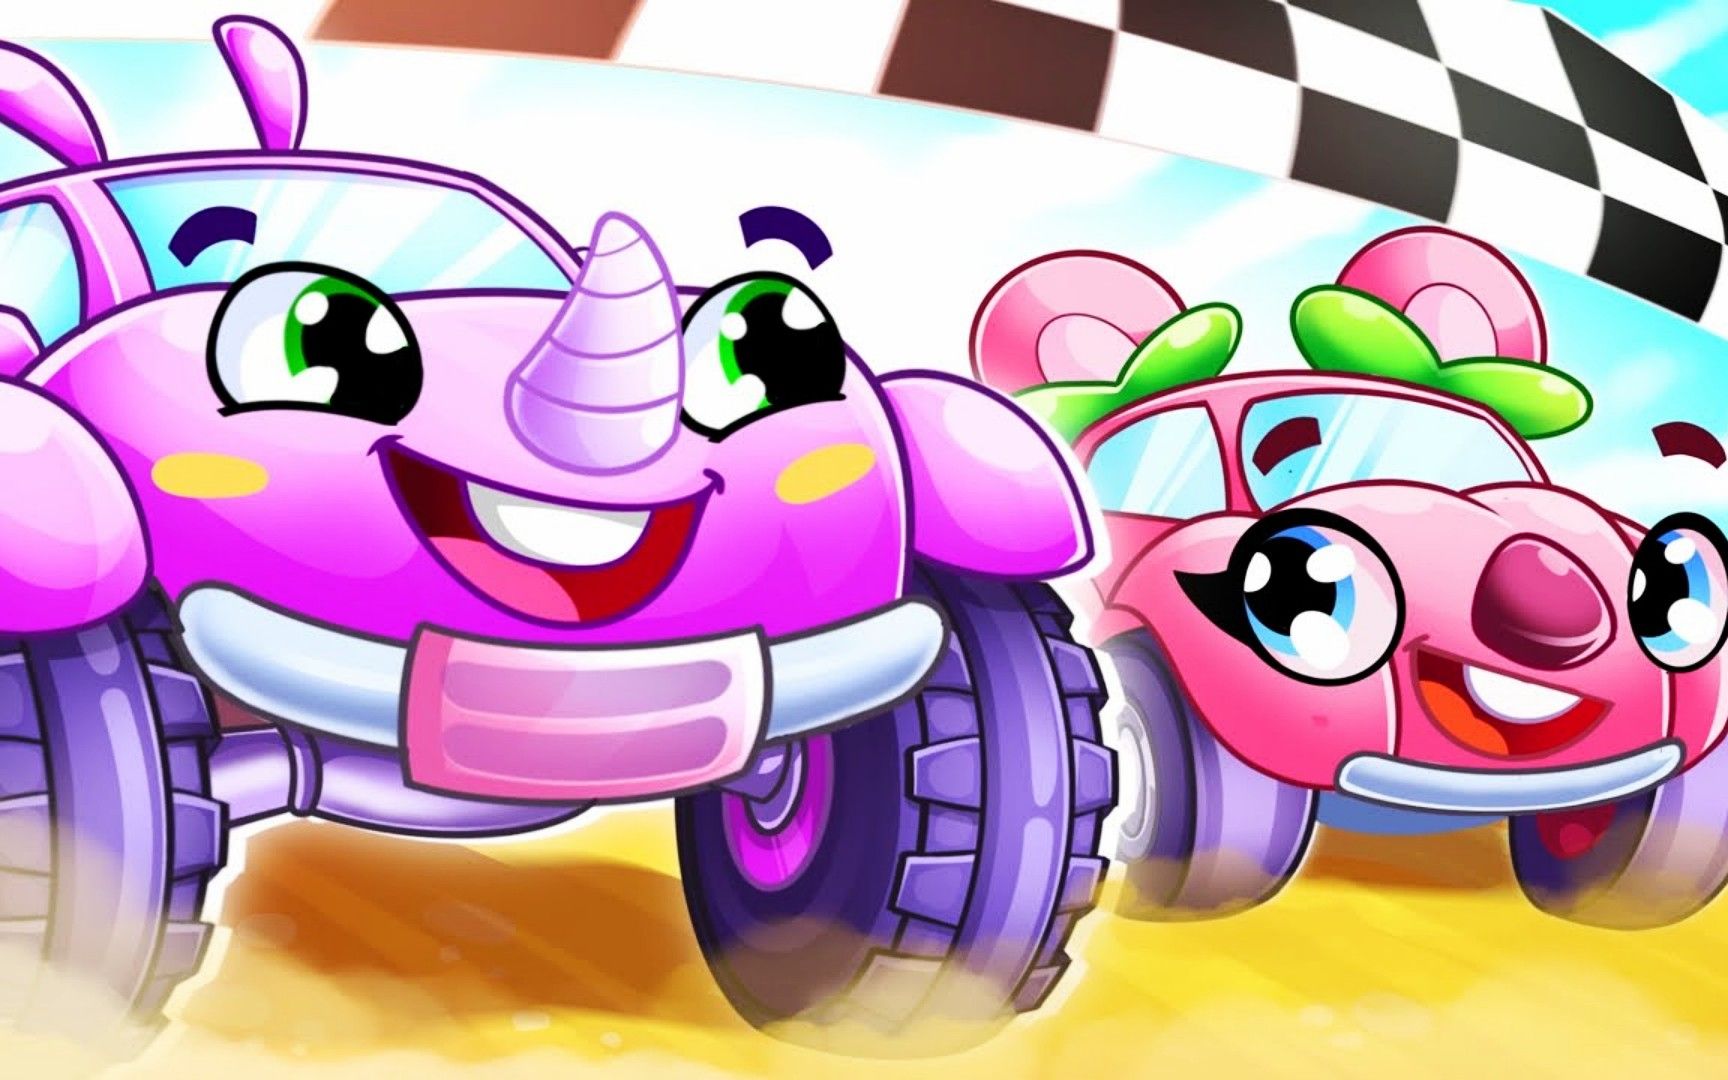 搜一下赛车玩具_手机玩具小视频赛车游戏_赛车玩具赛车视频